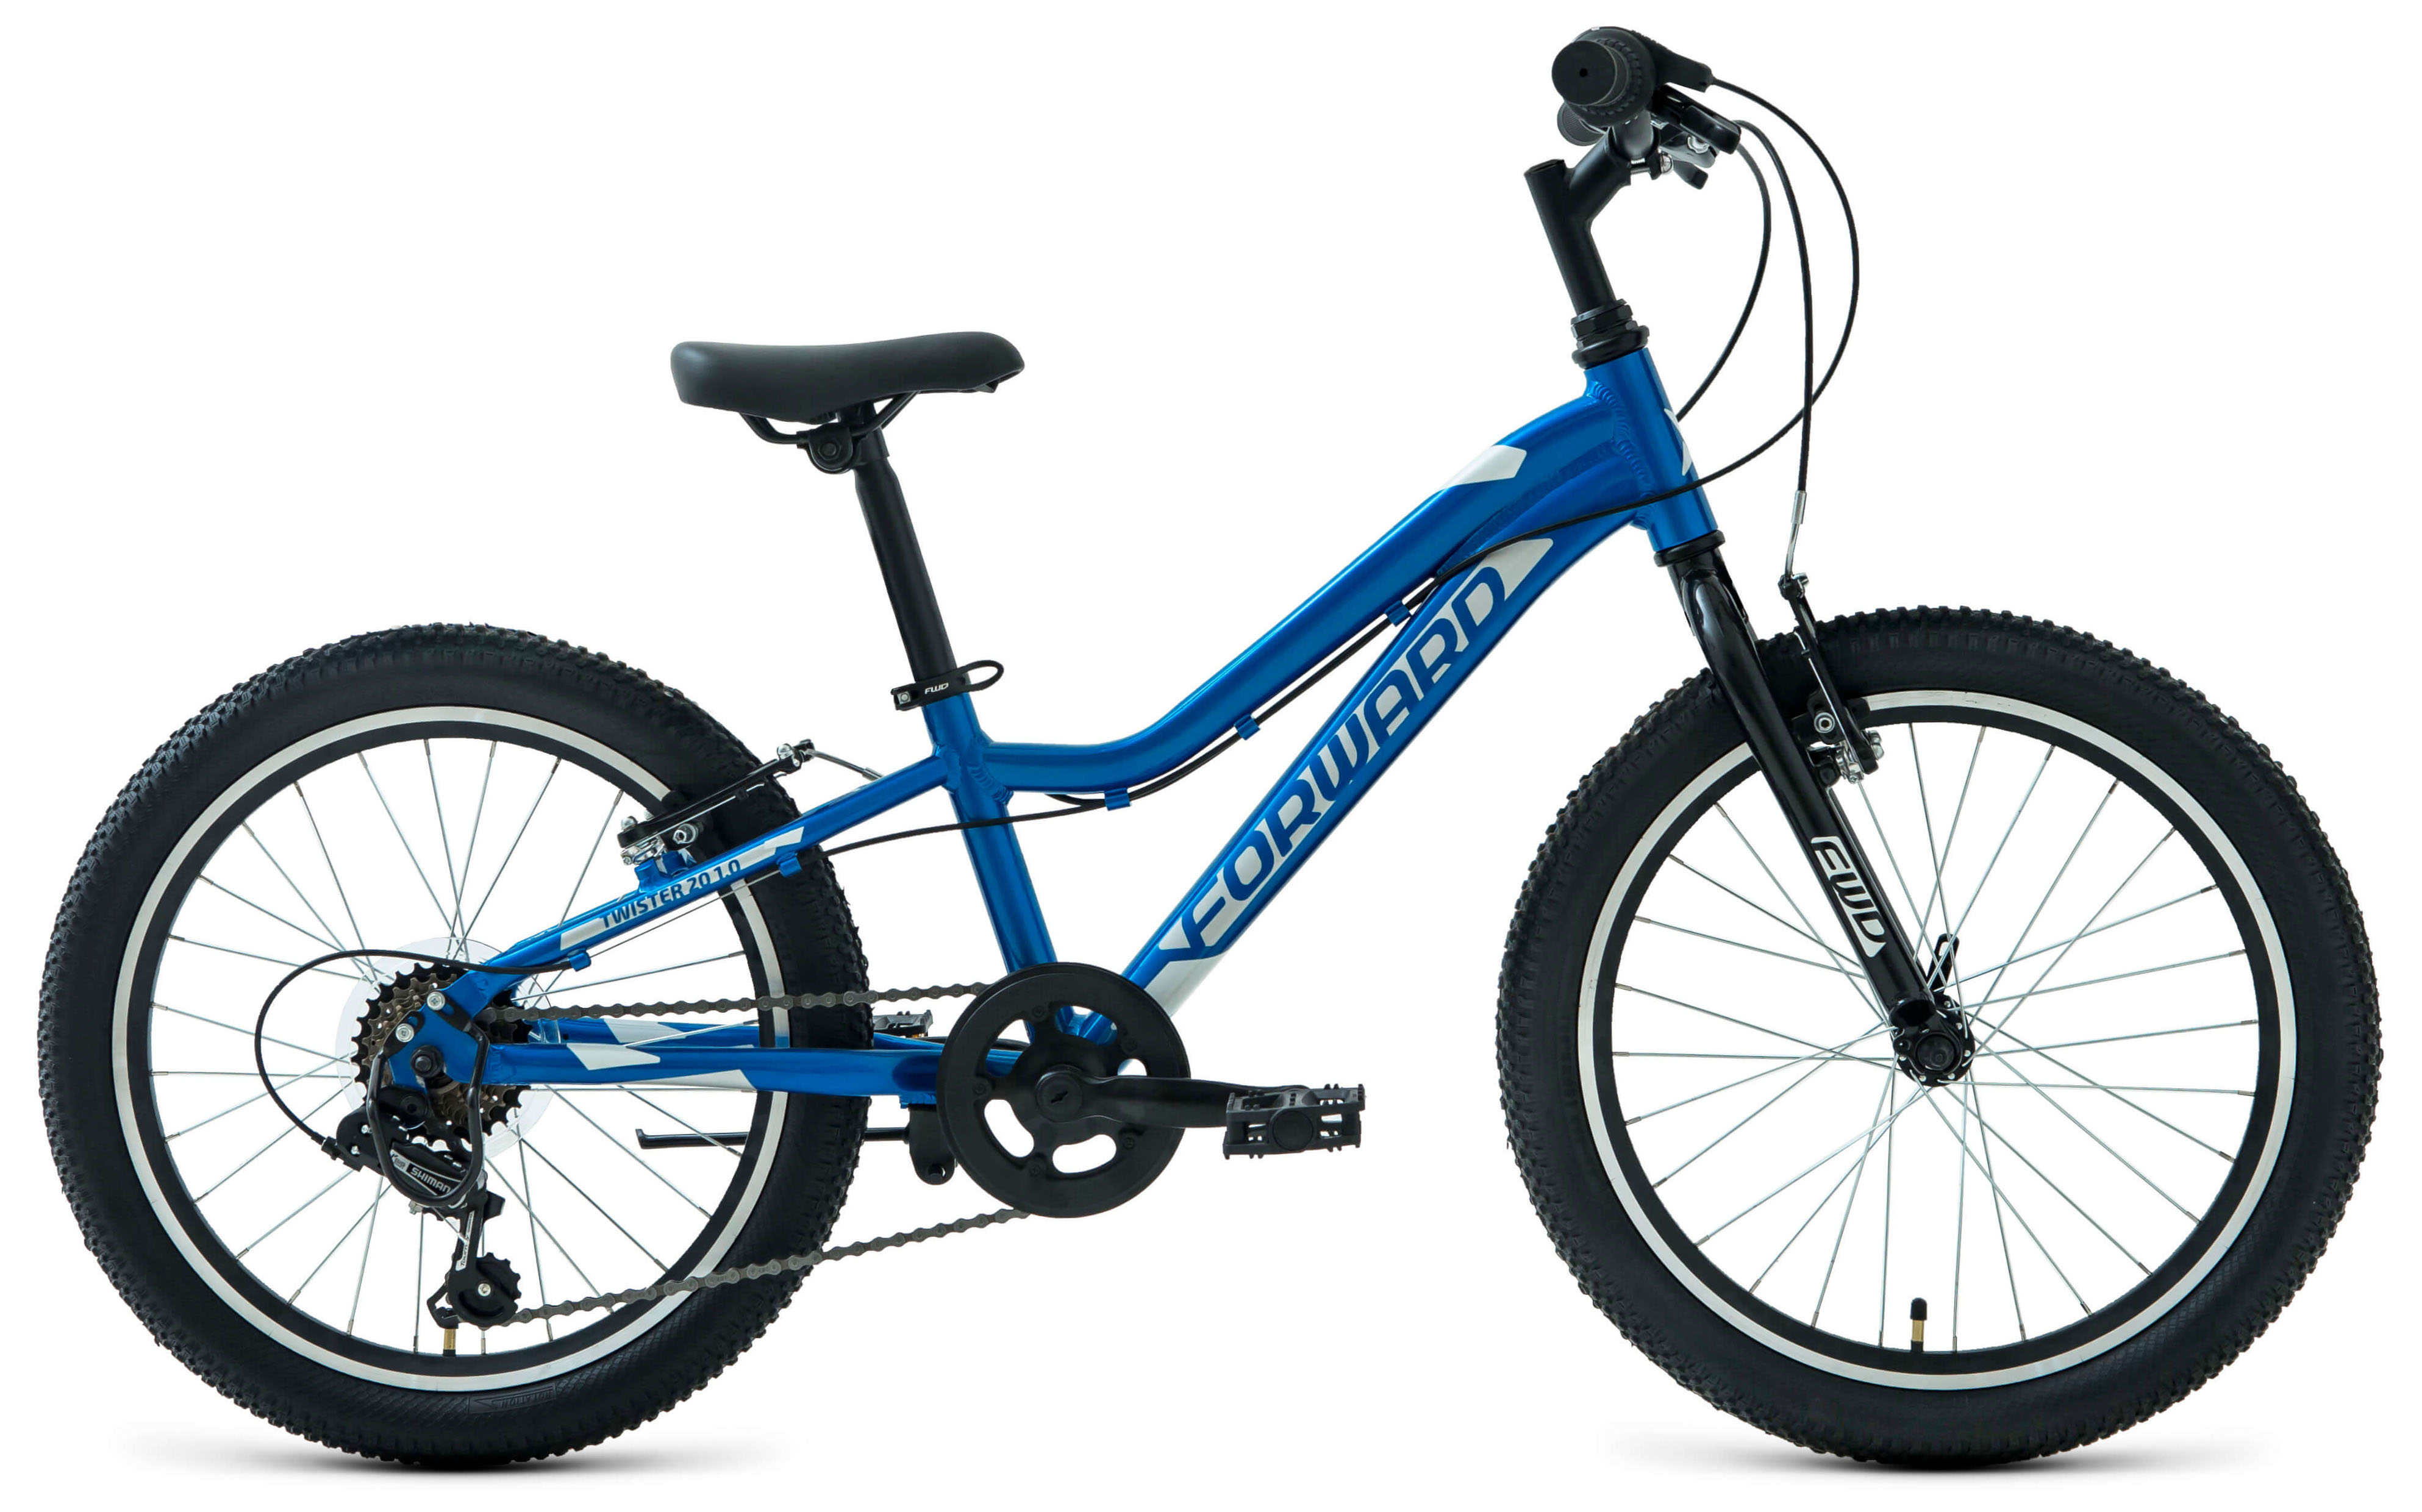  Отзывы о Детском велосипеде Forward Twister 20 1.0 2022